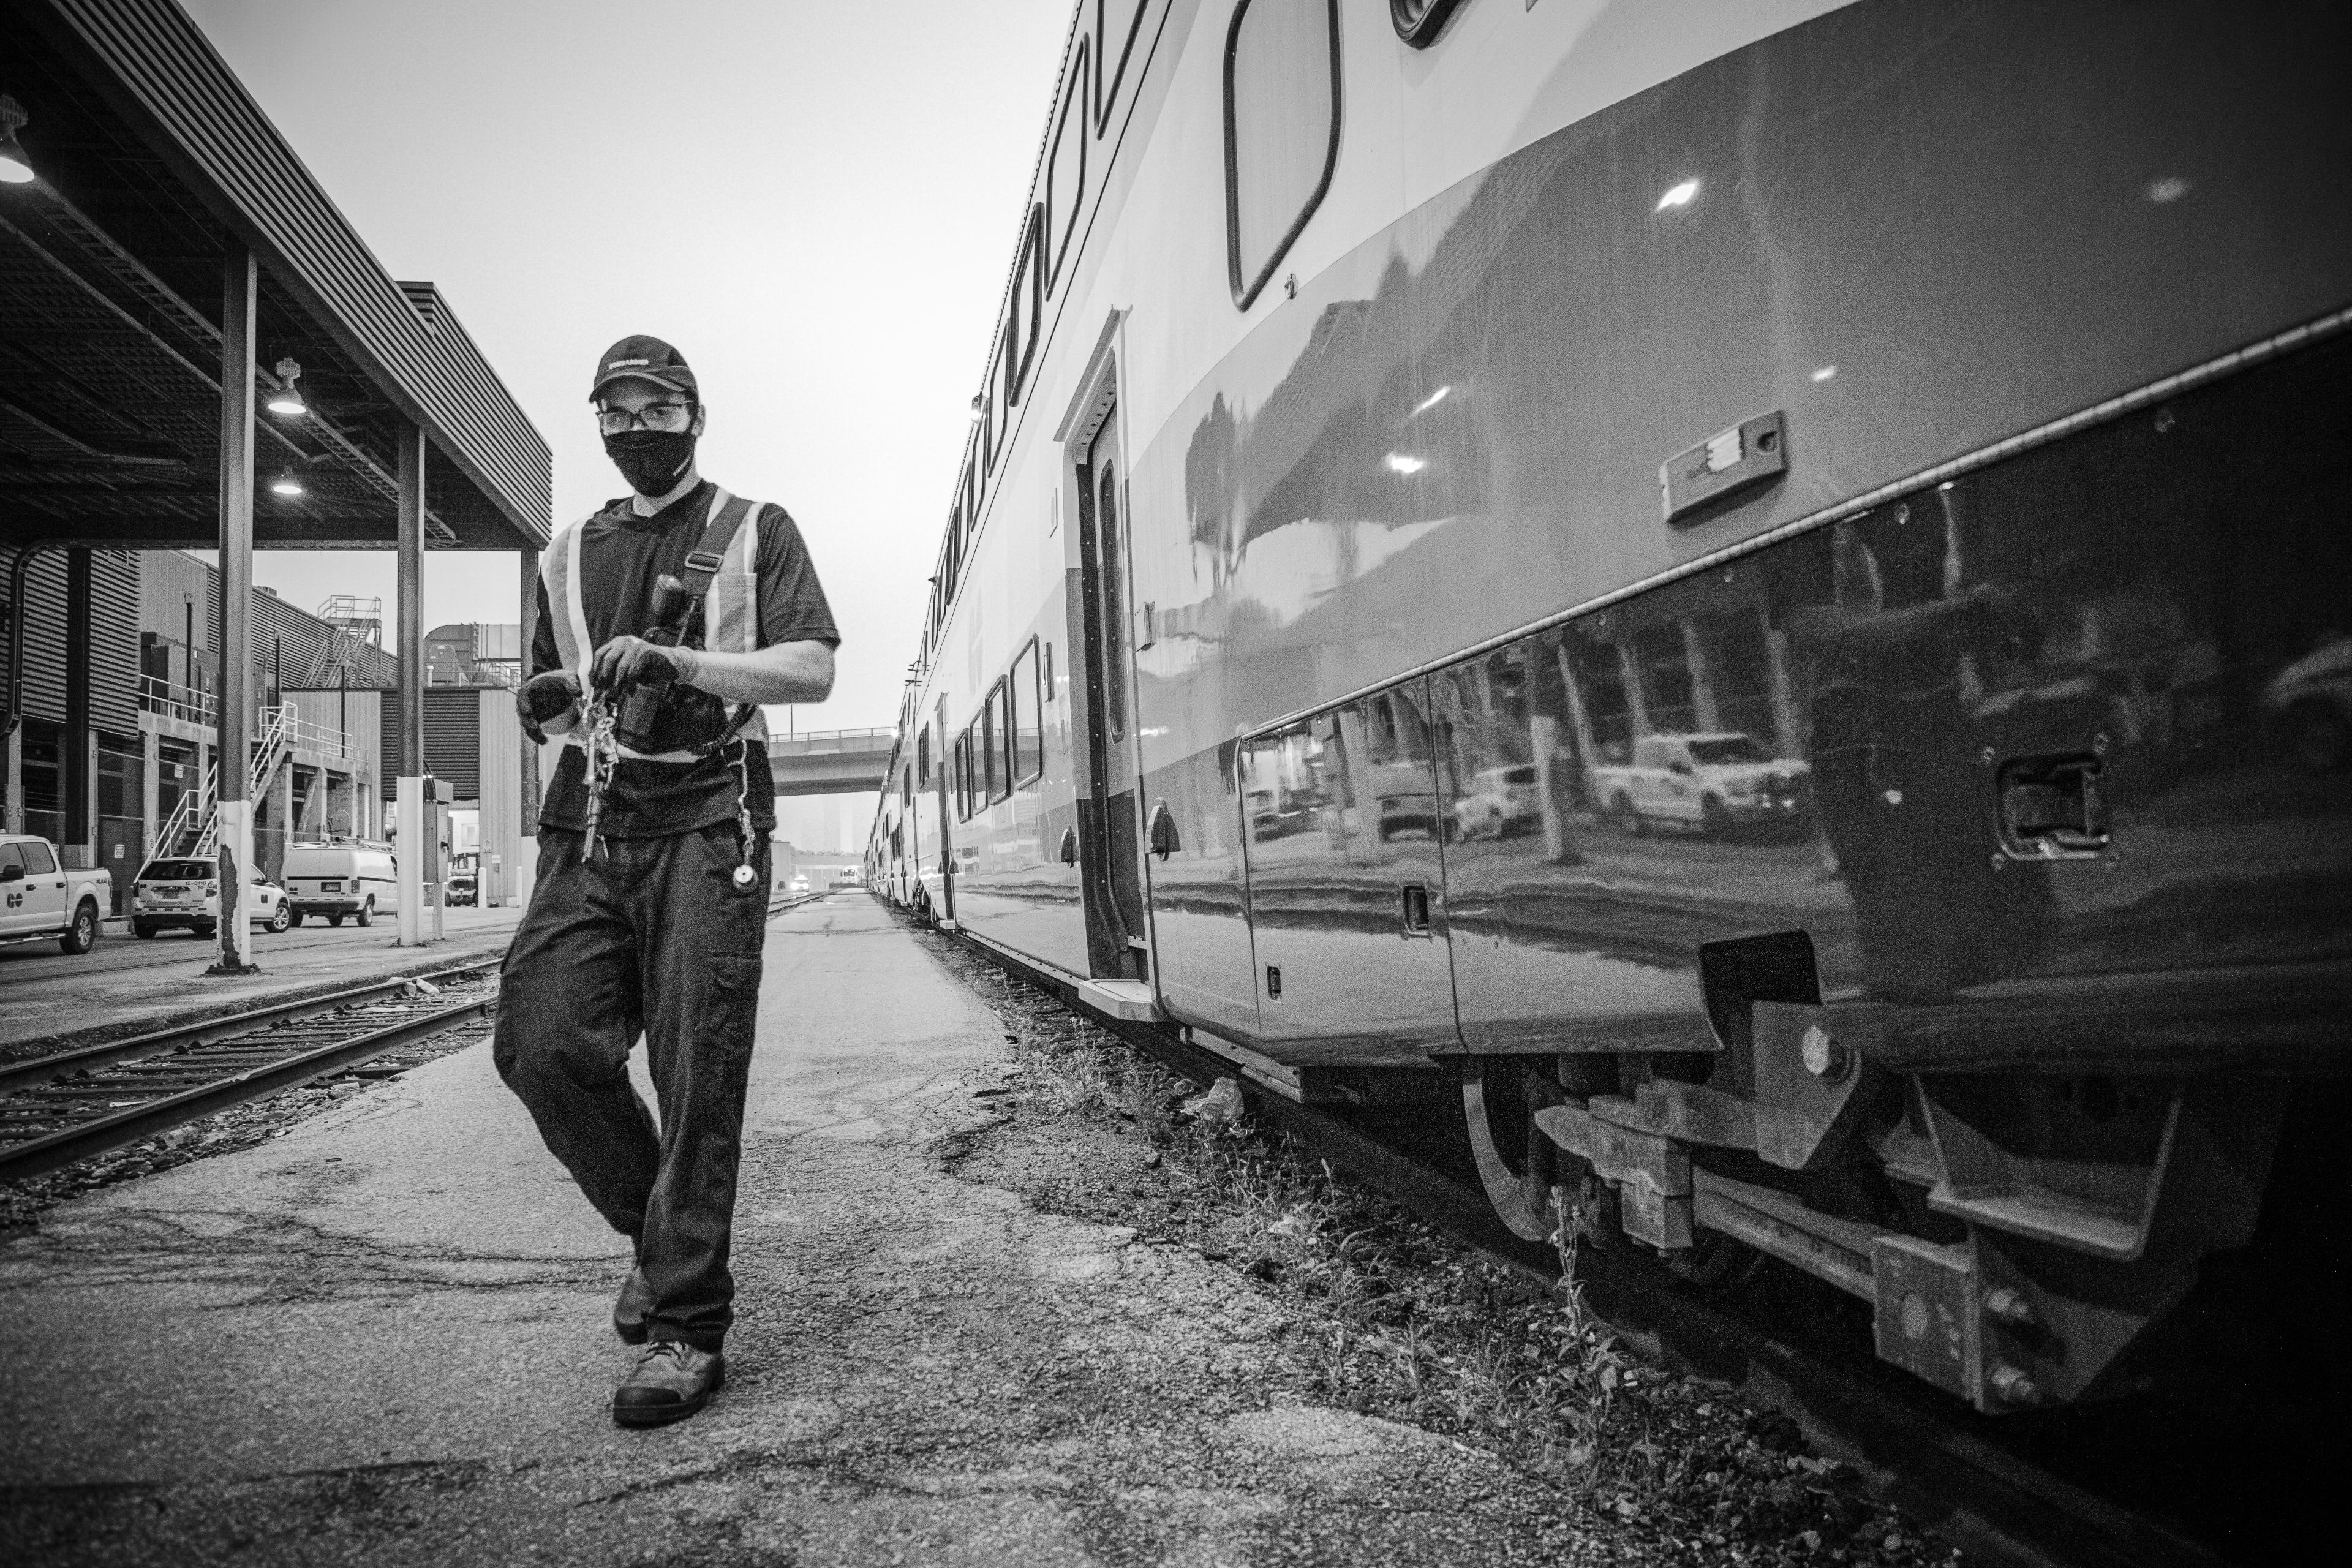 A man walks past a train.